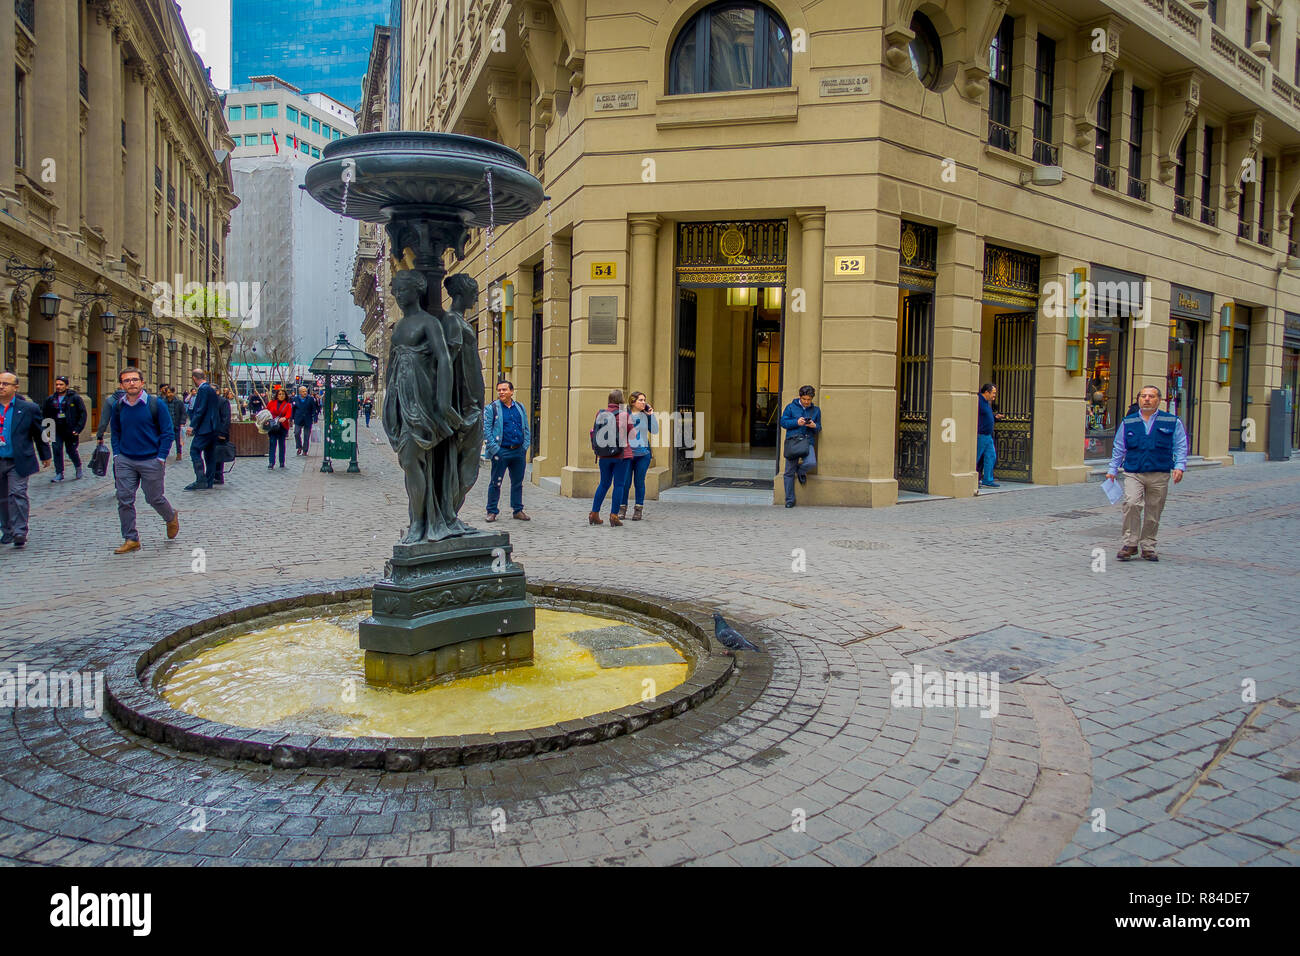 SANTIAGO, CHILE - 14. SEPTEMBER 2018: unbekannte Menschen zu Fuß am Platz in einem Brunnen im historischen Zentrum von Santiago de Chile Stockfoto